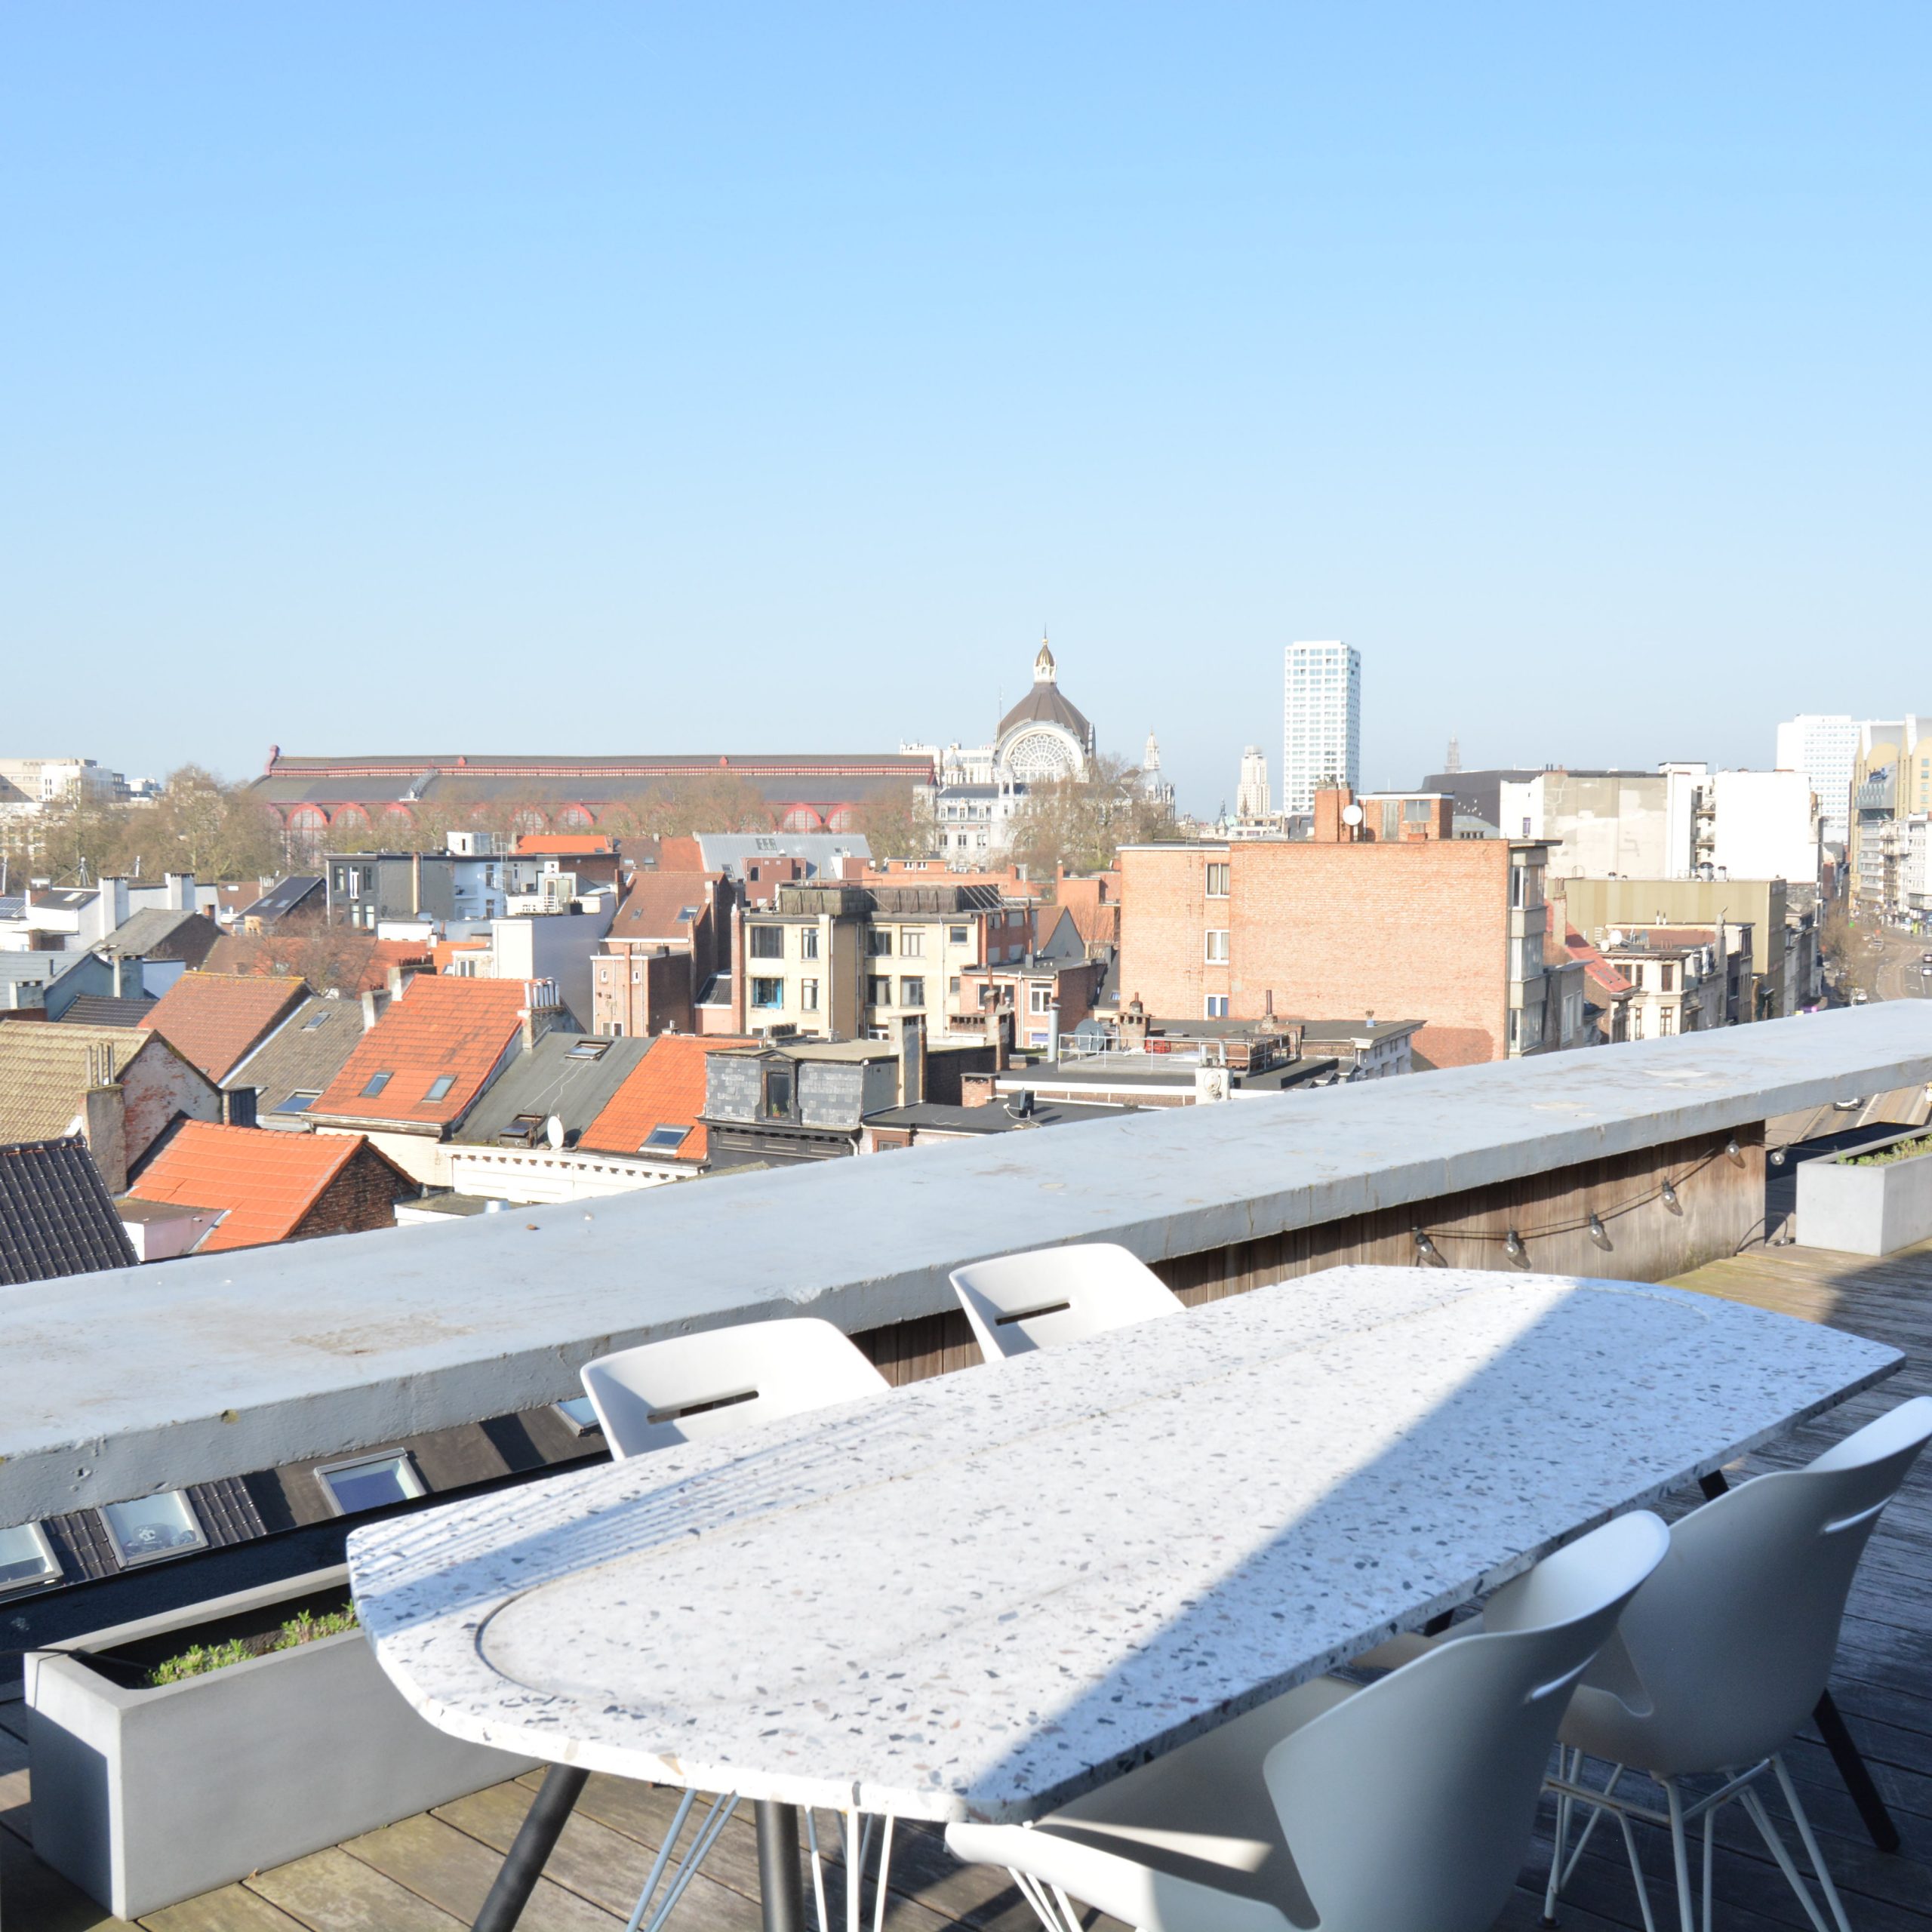 Turnhoutsebaan - Luxury expat apartment in Antwerp 2